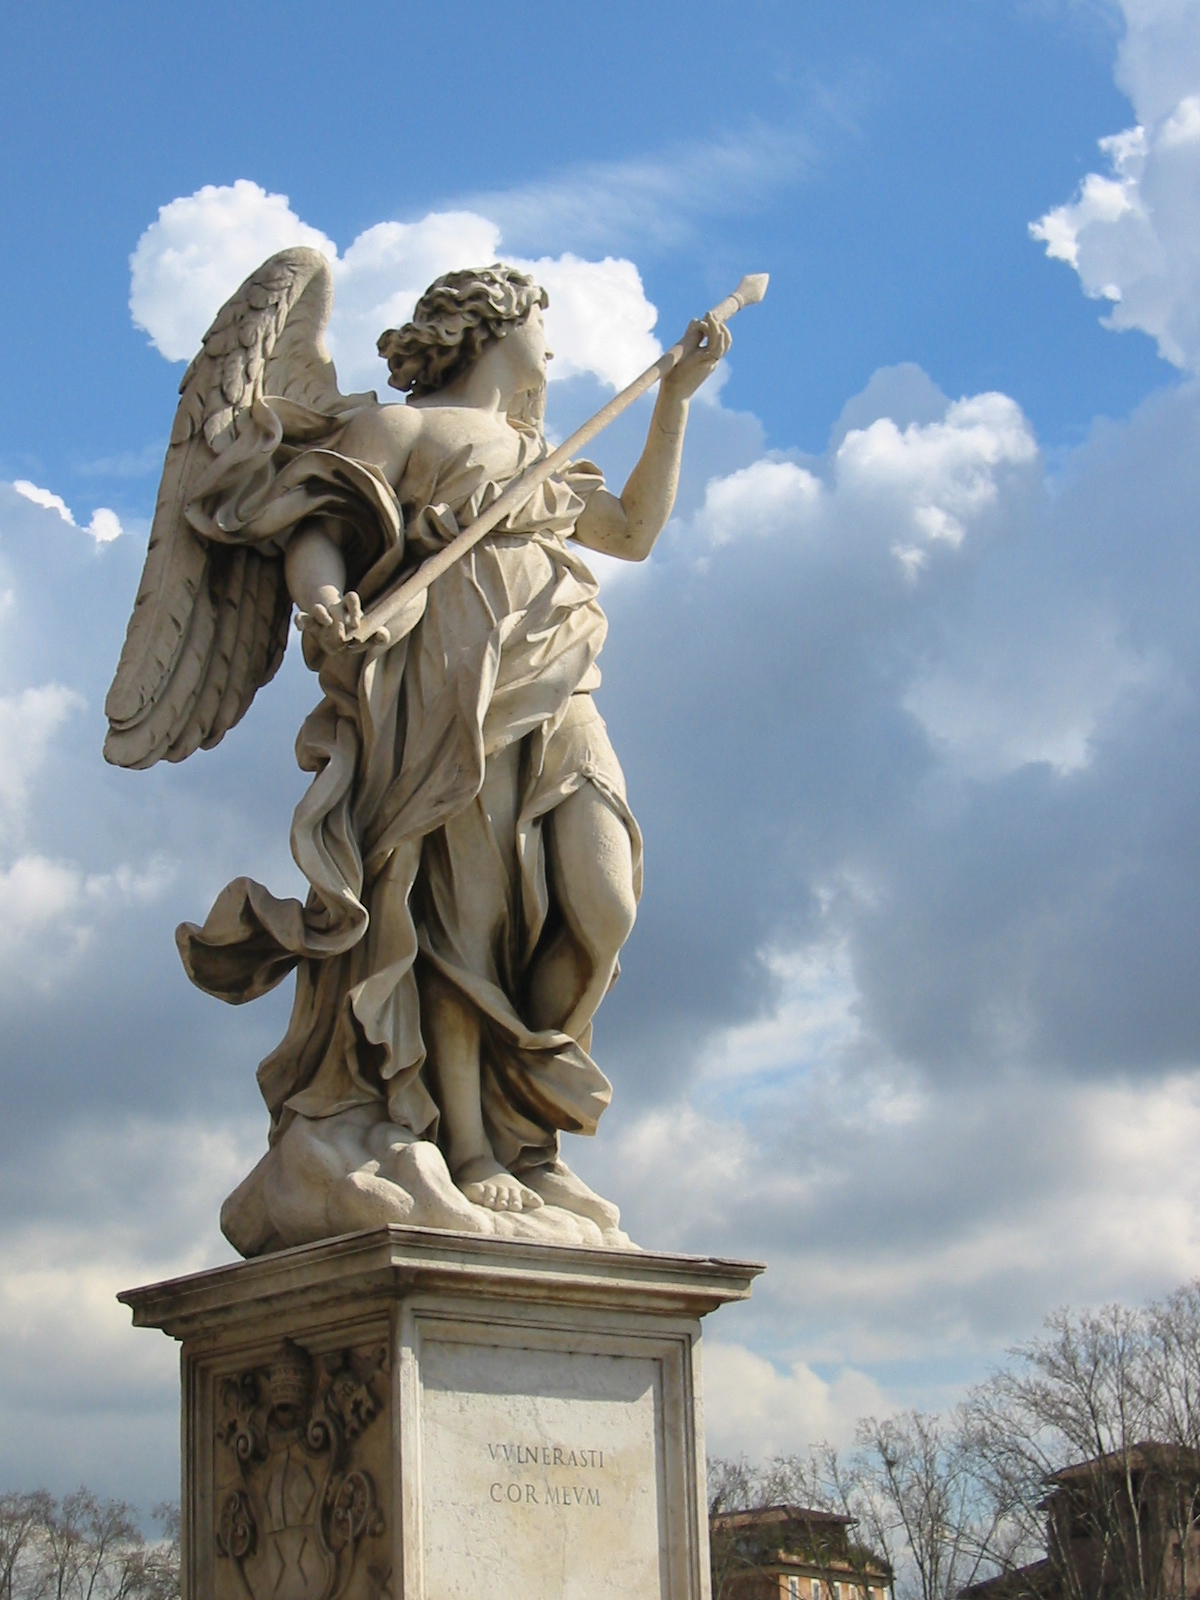 laurent art sculptures angel tombstone graveyard humanoid statue sculpture